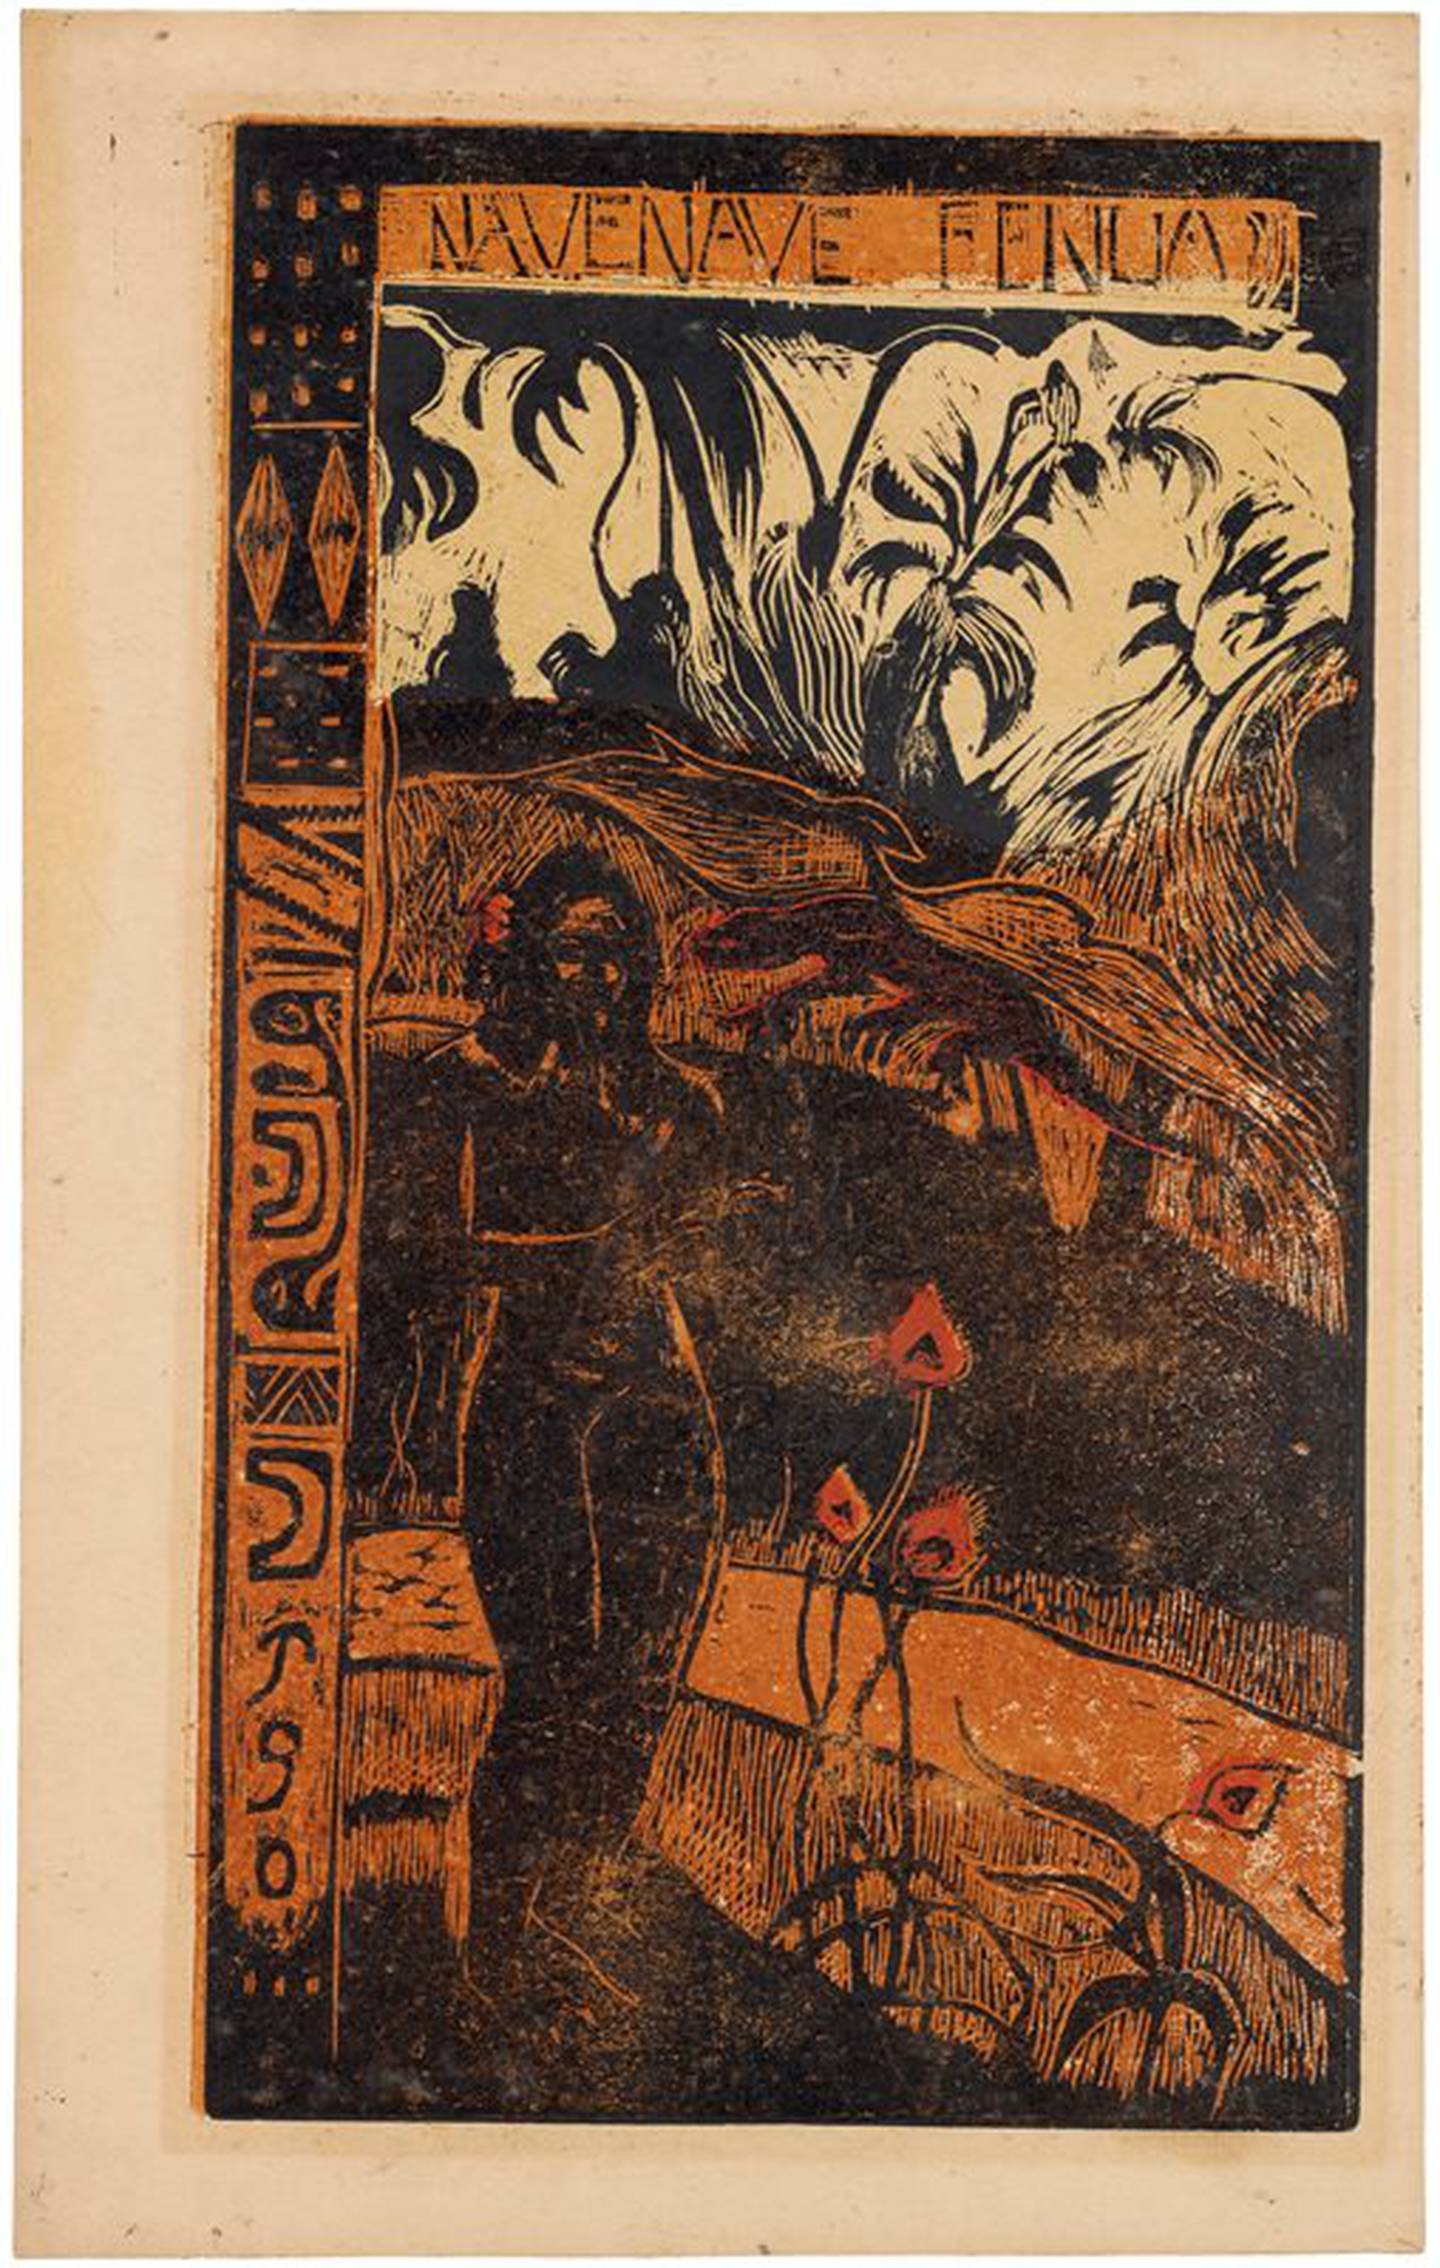 Paul Gauguin er berømt for sine malerier fra Tahiti. Han laget også grafikk fra Stillehavsøyene, der han utviklet nye teknikker og viste et mesterskap som fikk mange til å sammenligne ham med Edvard Munch. Foto: Reto Rodolfo Pedrini/Zürich